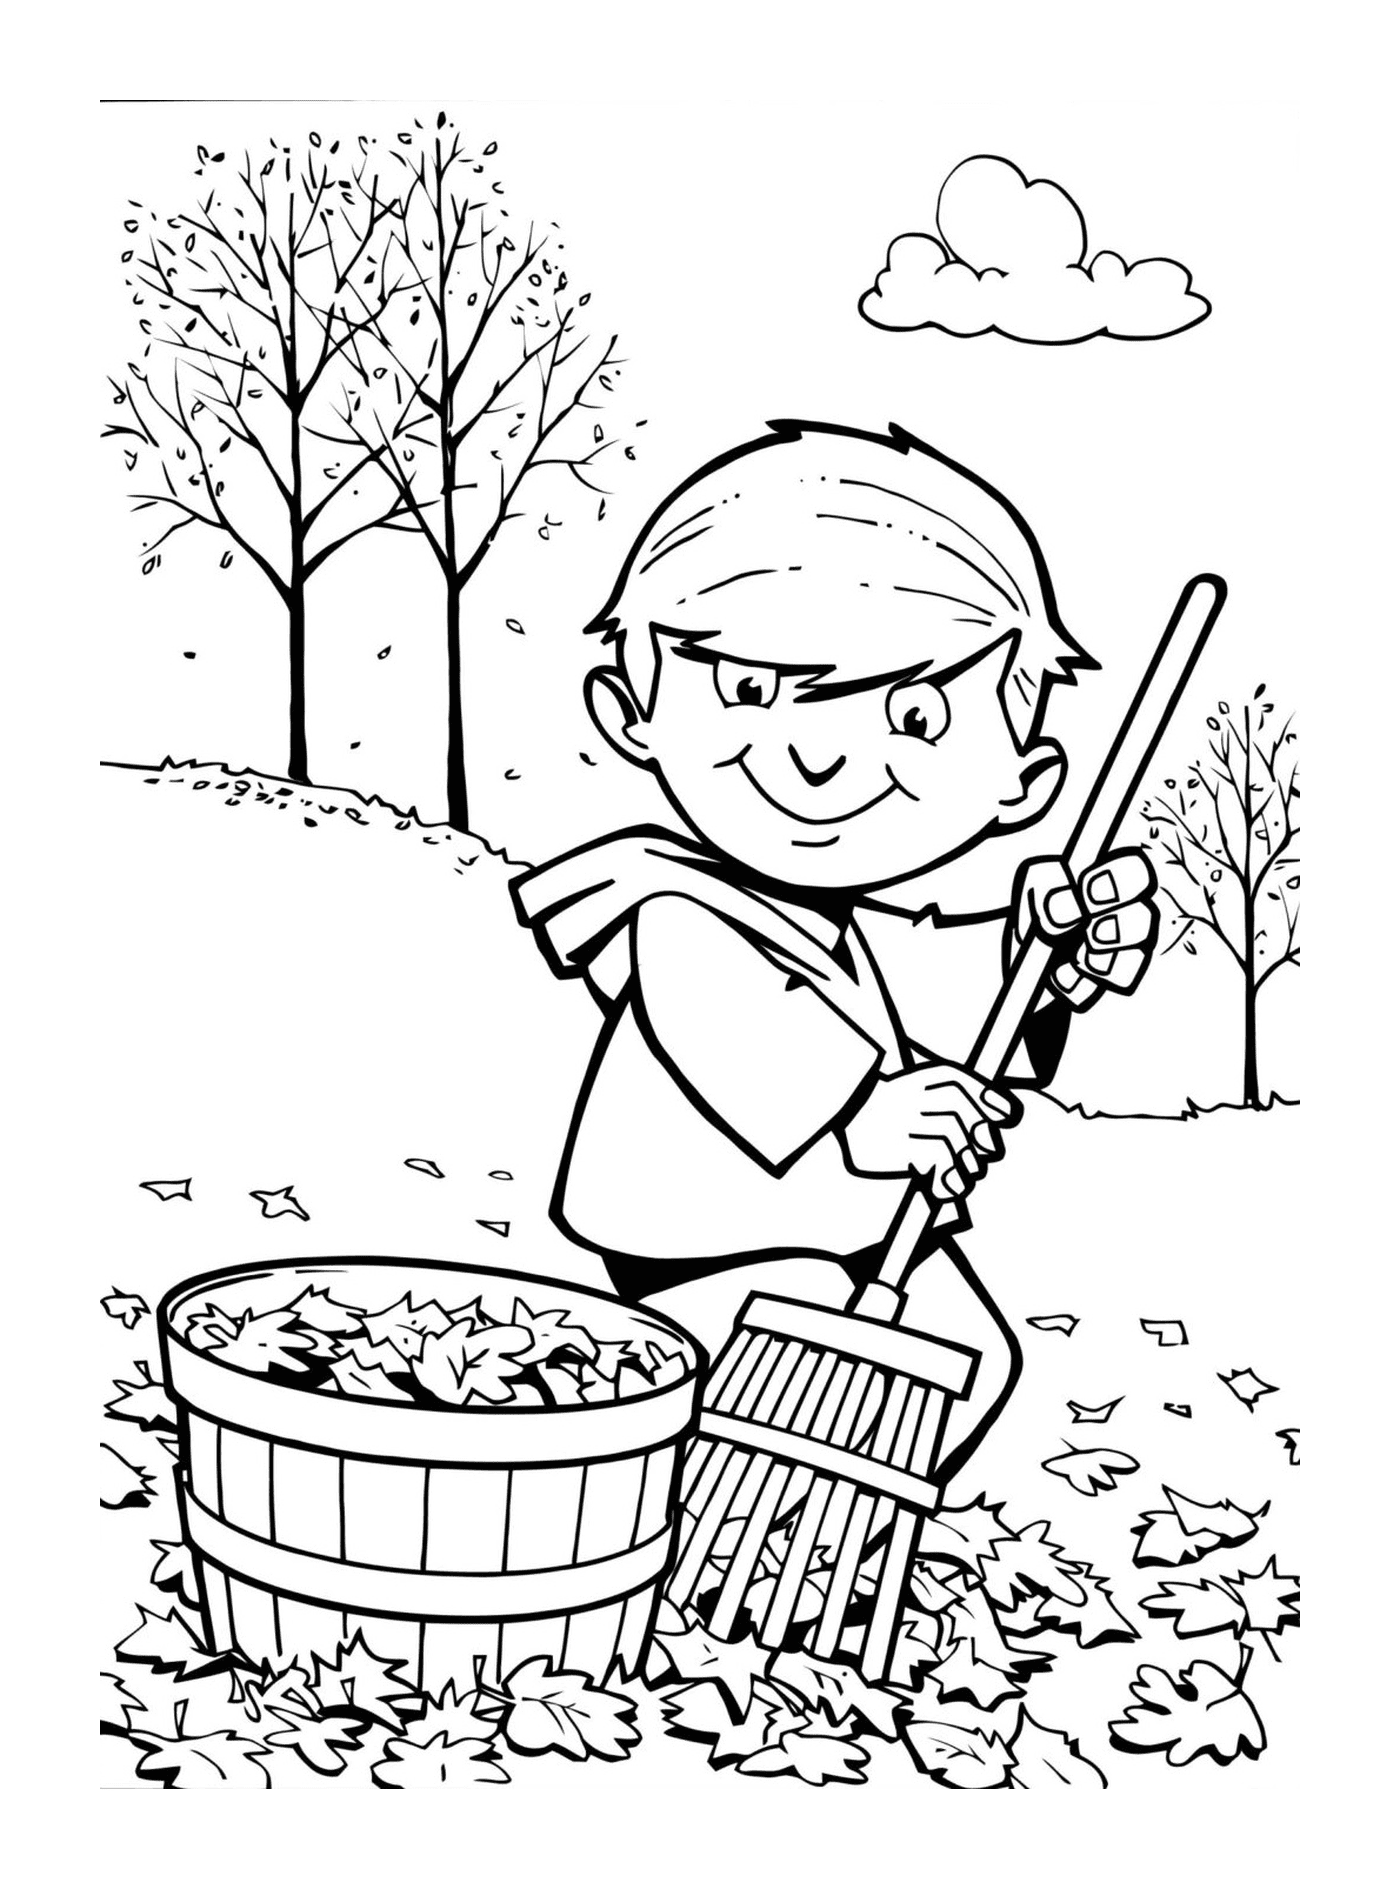   Enfant ramassant les feuilles d'automne 